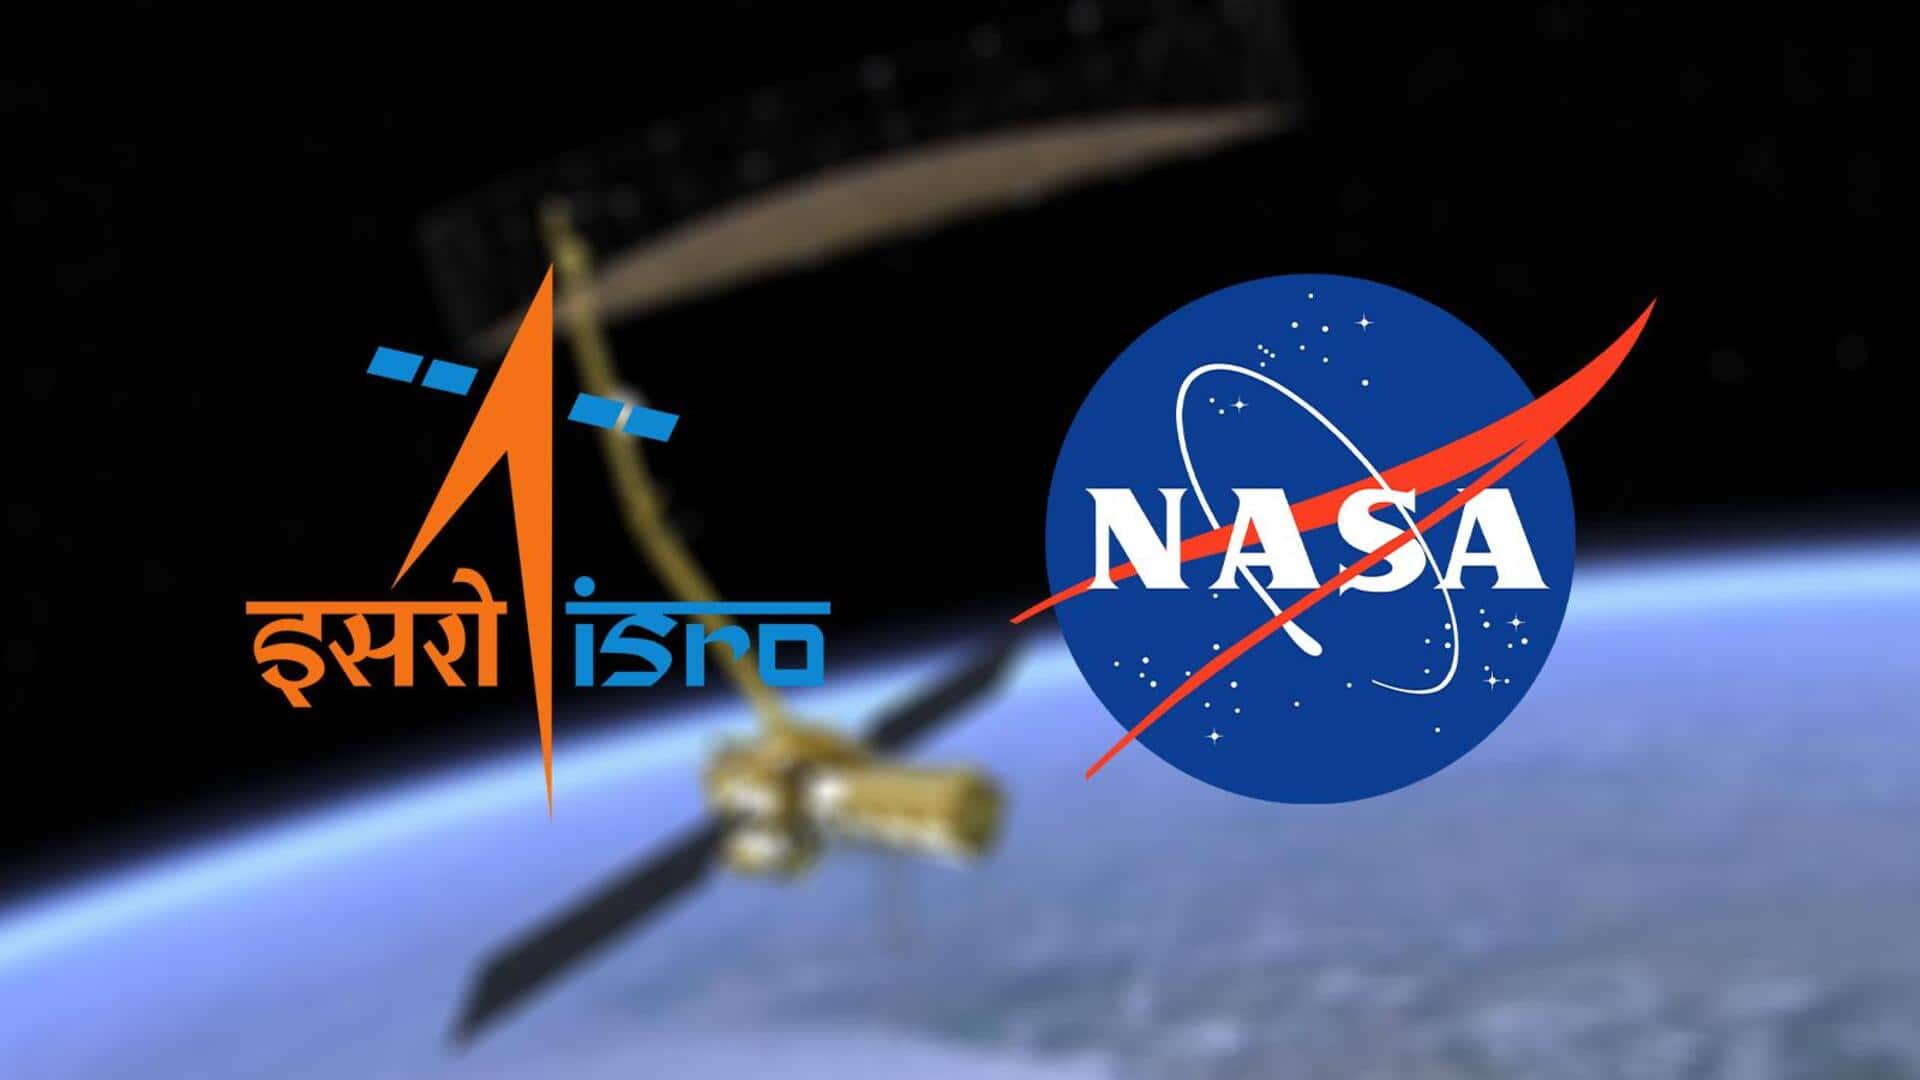 नासा के जॉनसन स्पेस सेंटर में ISRO अंतरिक्ष यात्रियों के लिए शुरू होगा खास प्रशिक्षण 